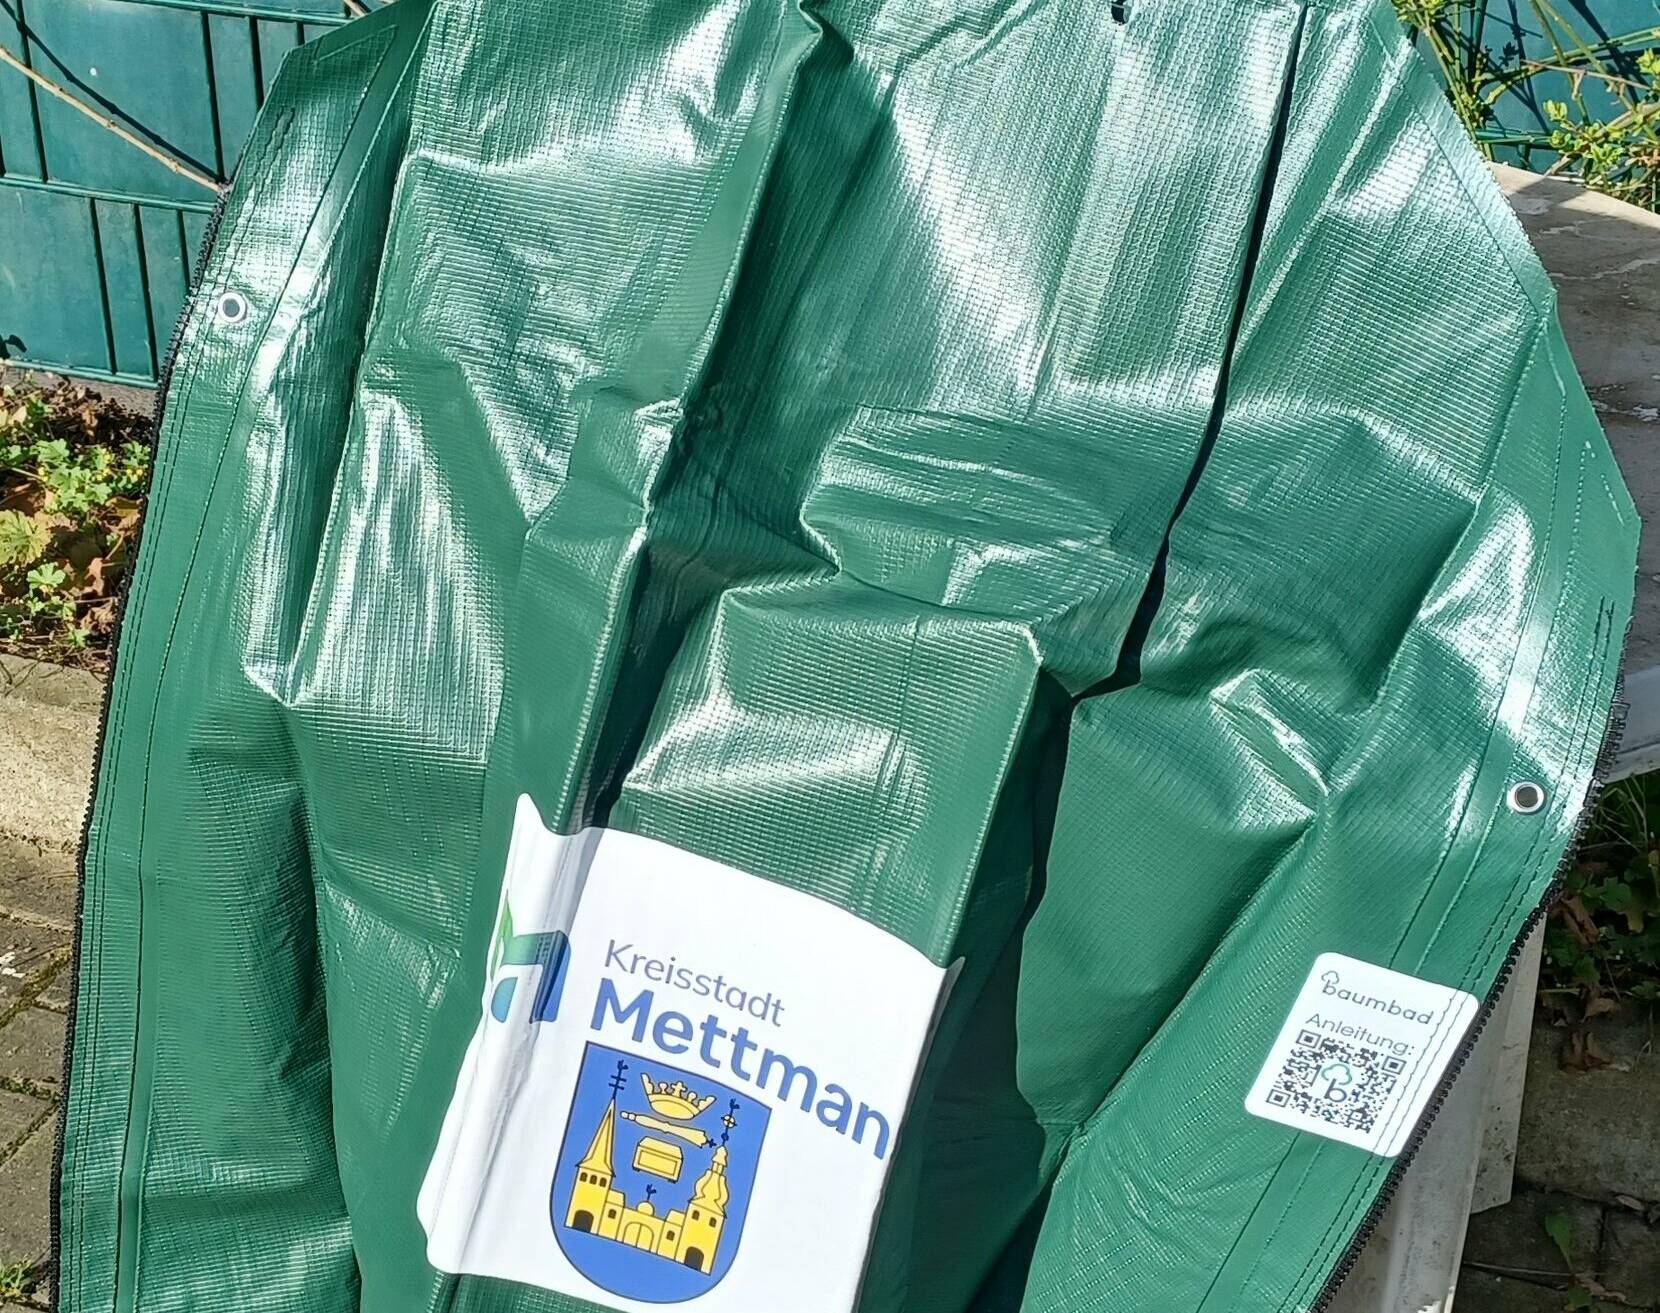  Ab dem 2. Mai werden auf dem Recyclinghof an der Hammerstraße Bewässerungssäcke für städtische Bäume herausgegeben. 
  